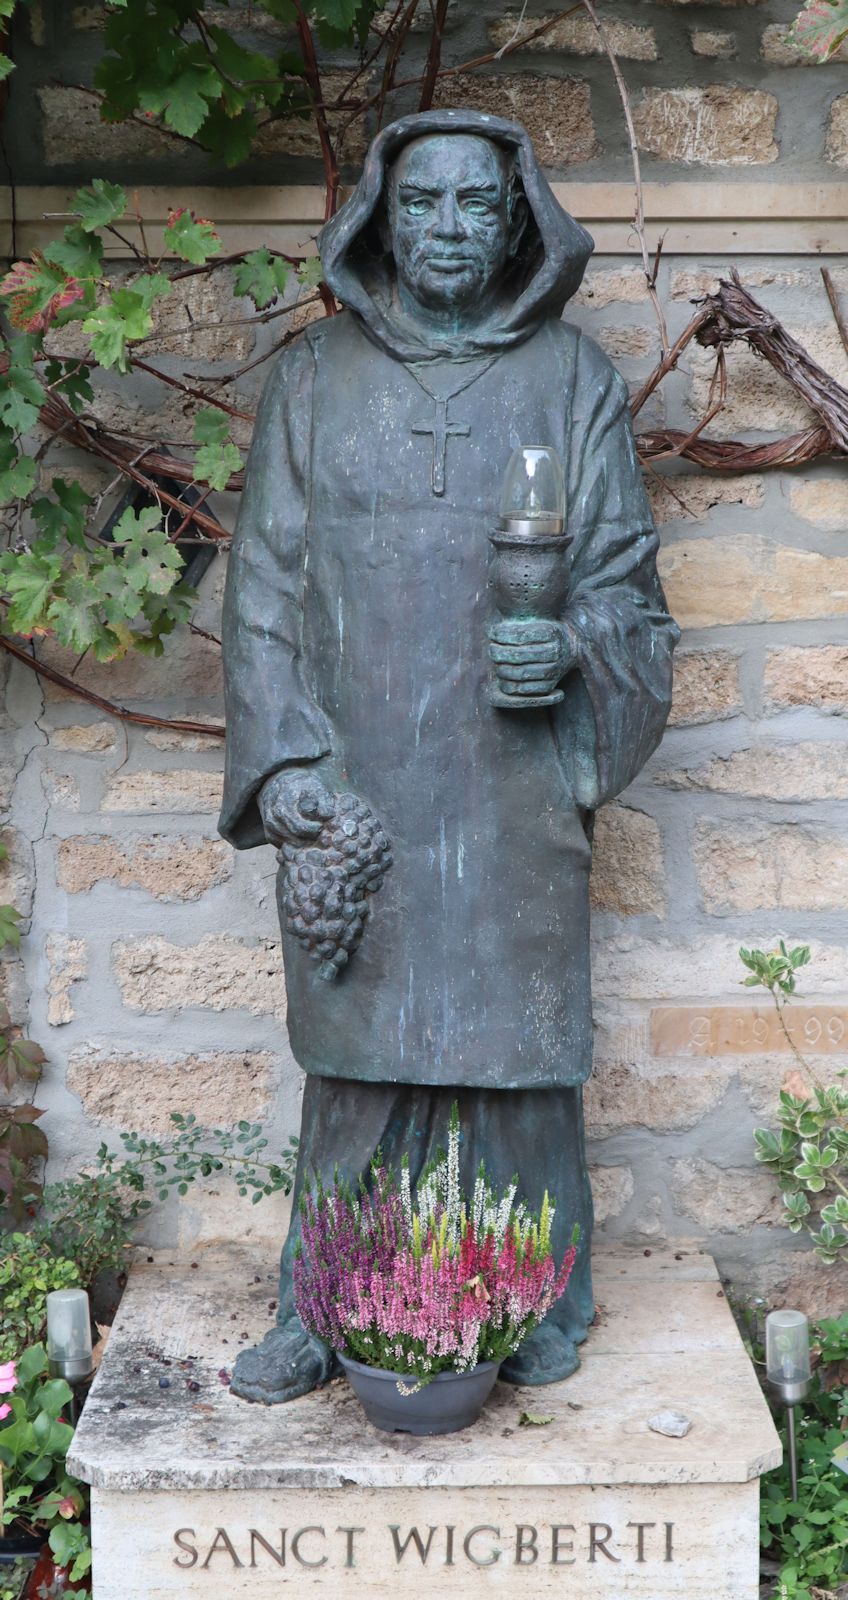 Wigbert-Statue im Hof des Klosters Werningshausen, einem ökumenisches Benediktinerkloster unter dem Dach der Evangelisch-lutherischen Kirche in Thüringen